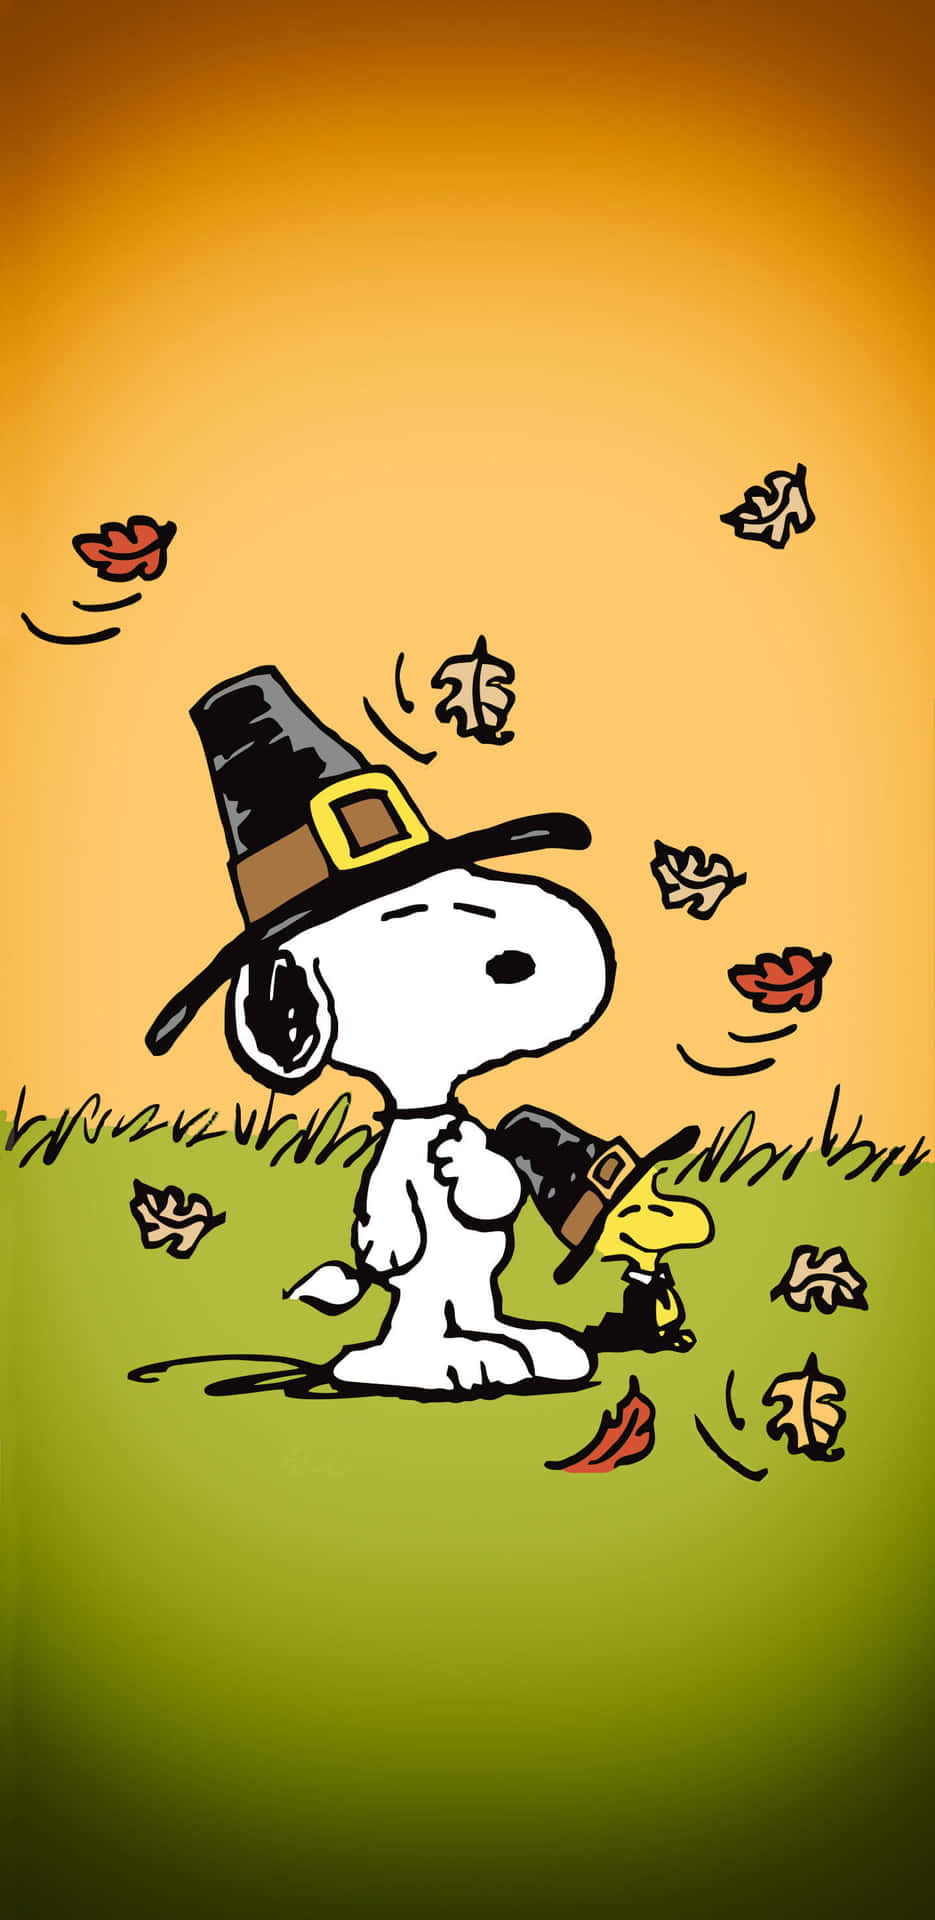 Snoopy kommer i efterårs ånd! Wallpaper